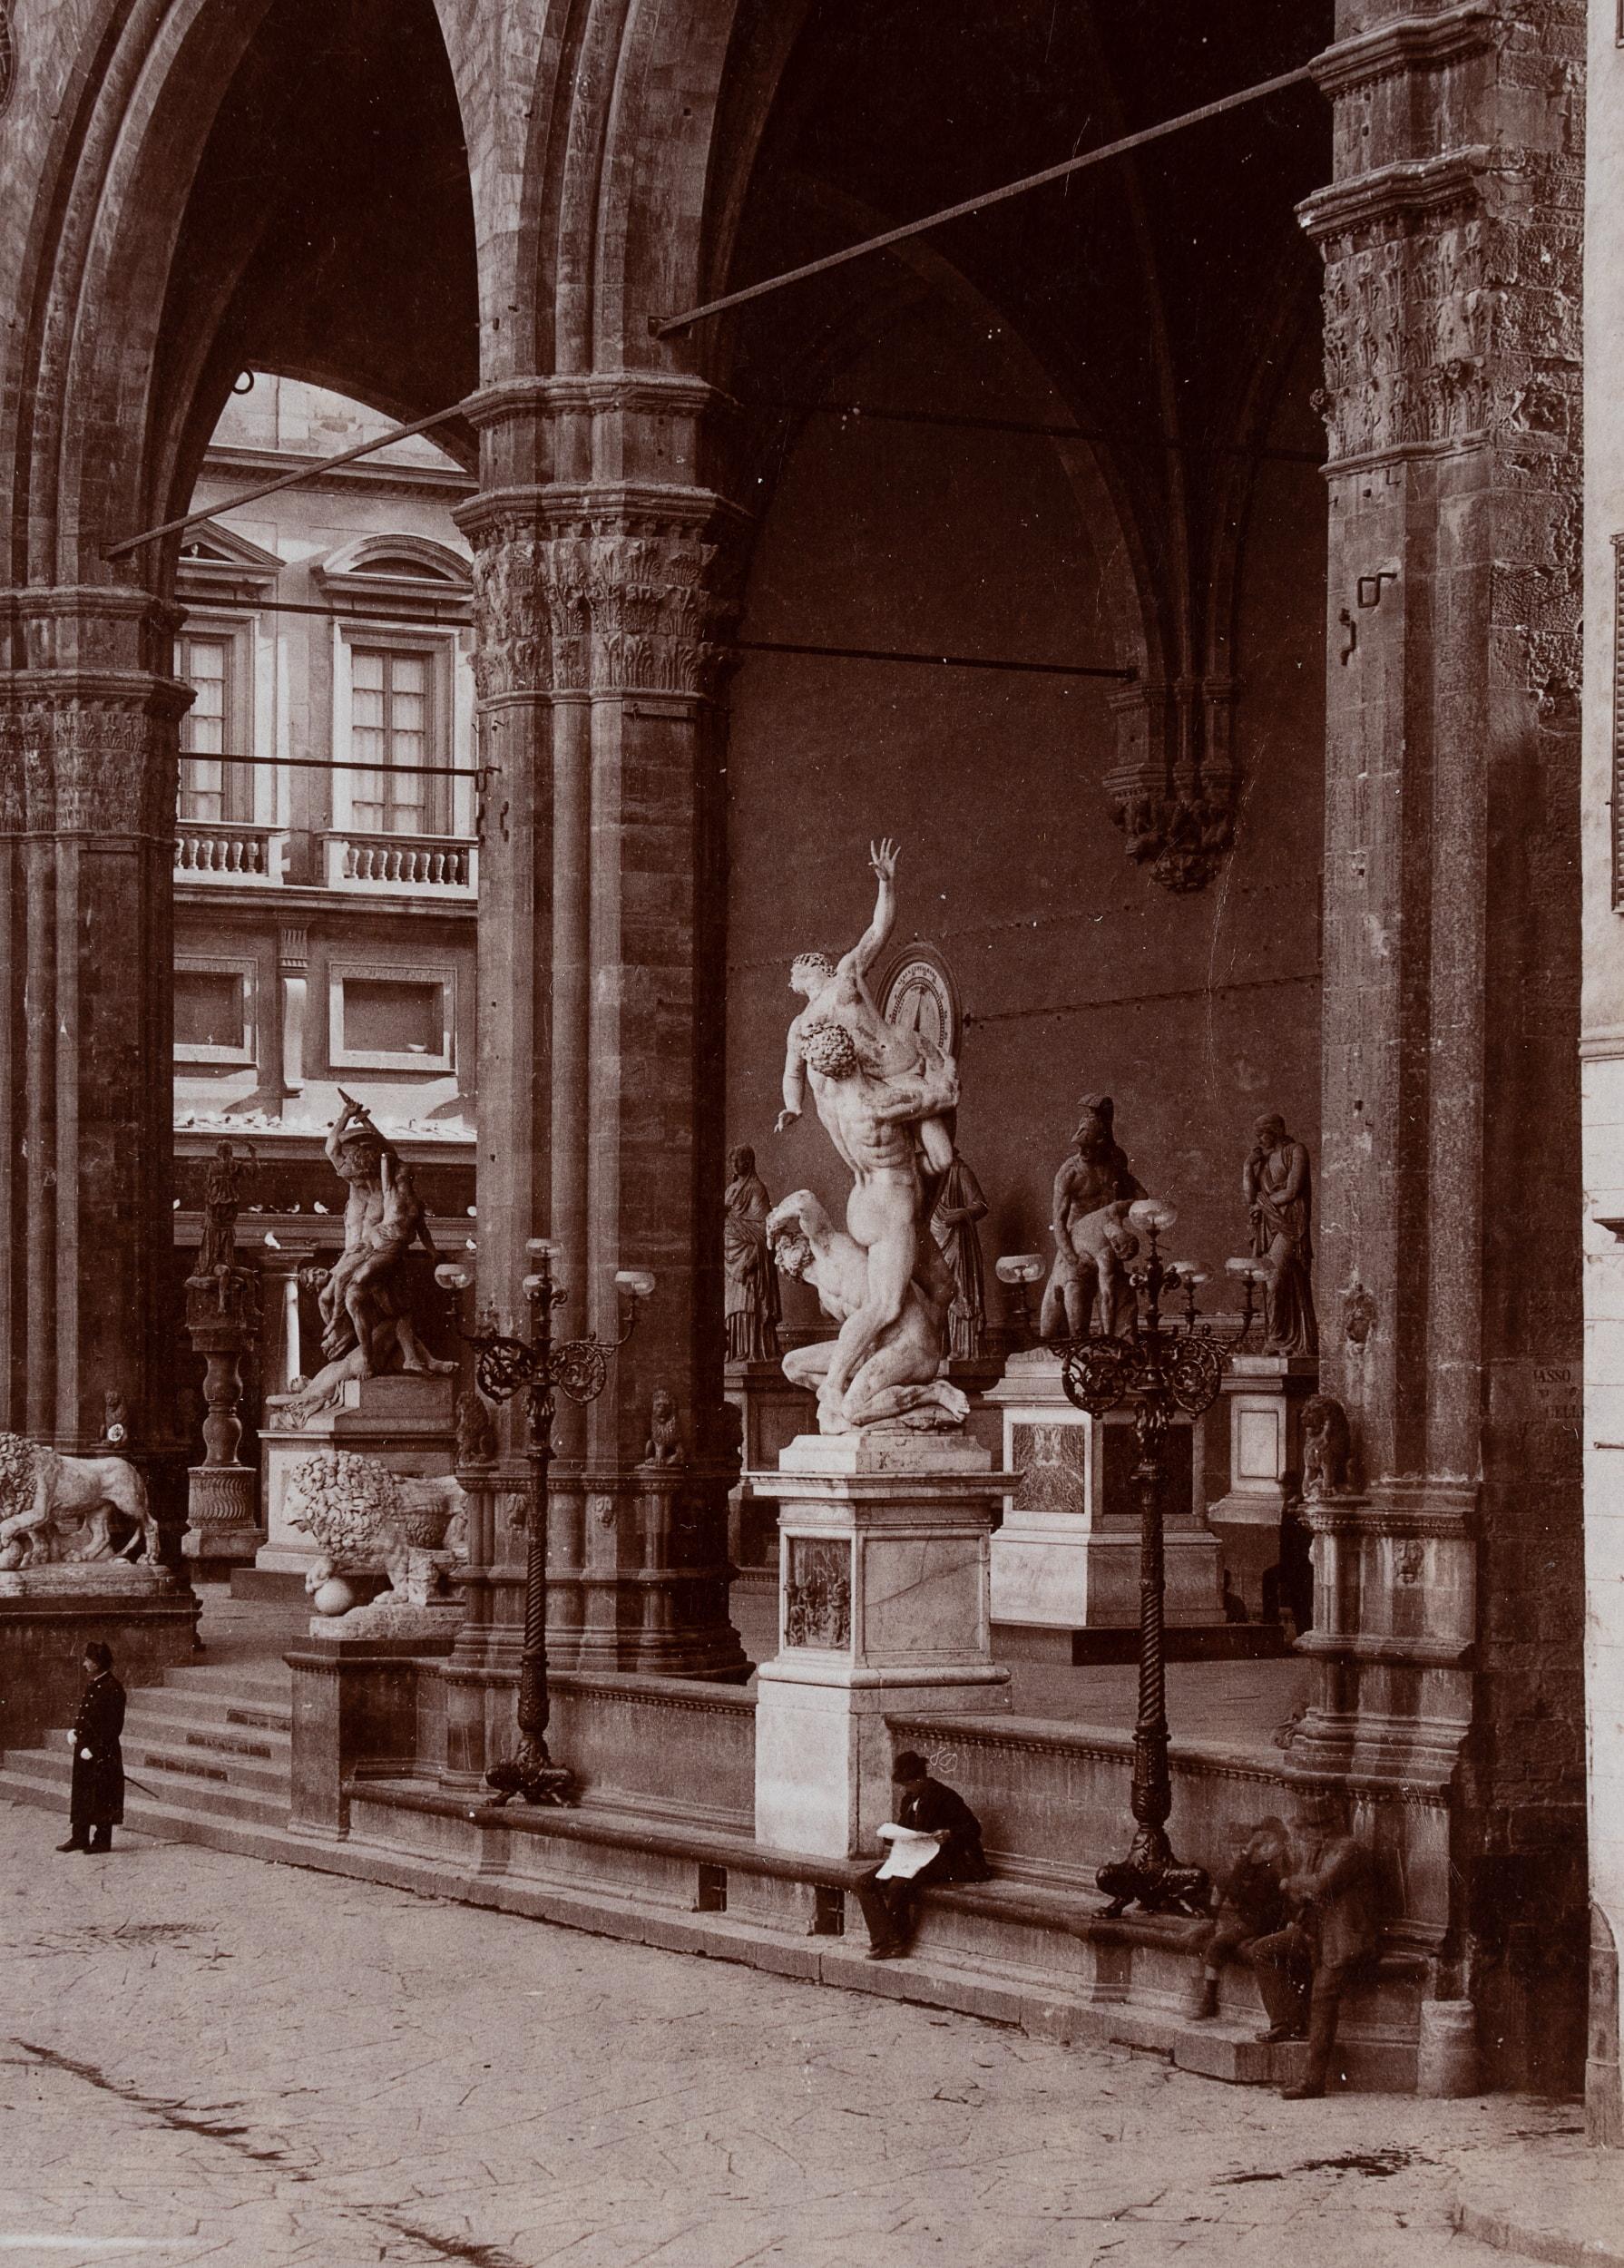 Fratelli Alinari (19. Jahrhundert): Blick auf die Loggia dei Lanzi mit den beeindruckenden römischen Statuen und vereinzelten Passanten auf dem Vorplatz, um 1890, Albumenpapierabzug

Technik: Albuminpapierabzug, montiert auf Karton

Beschriftung: